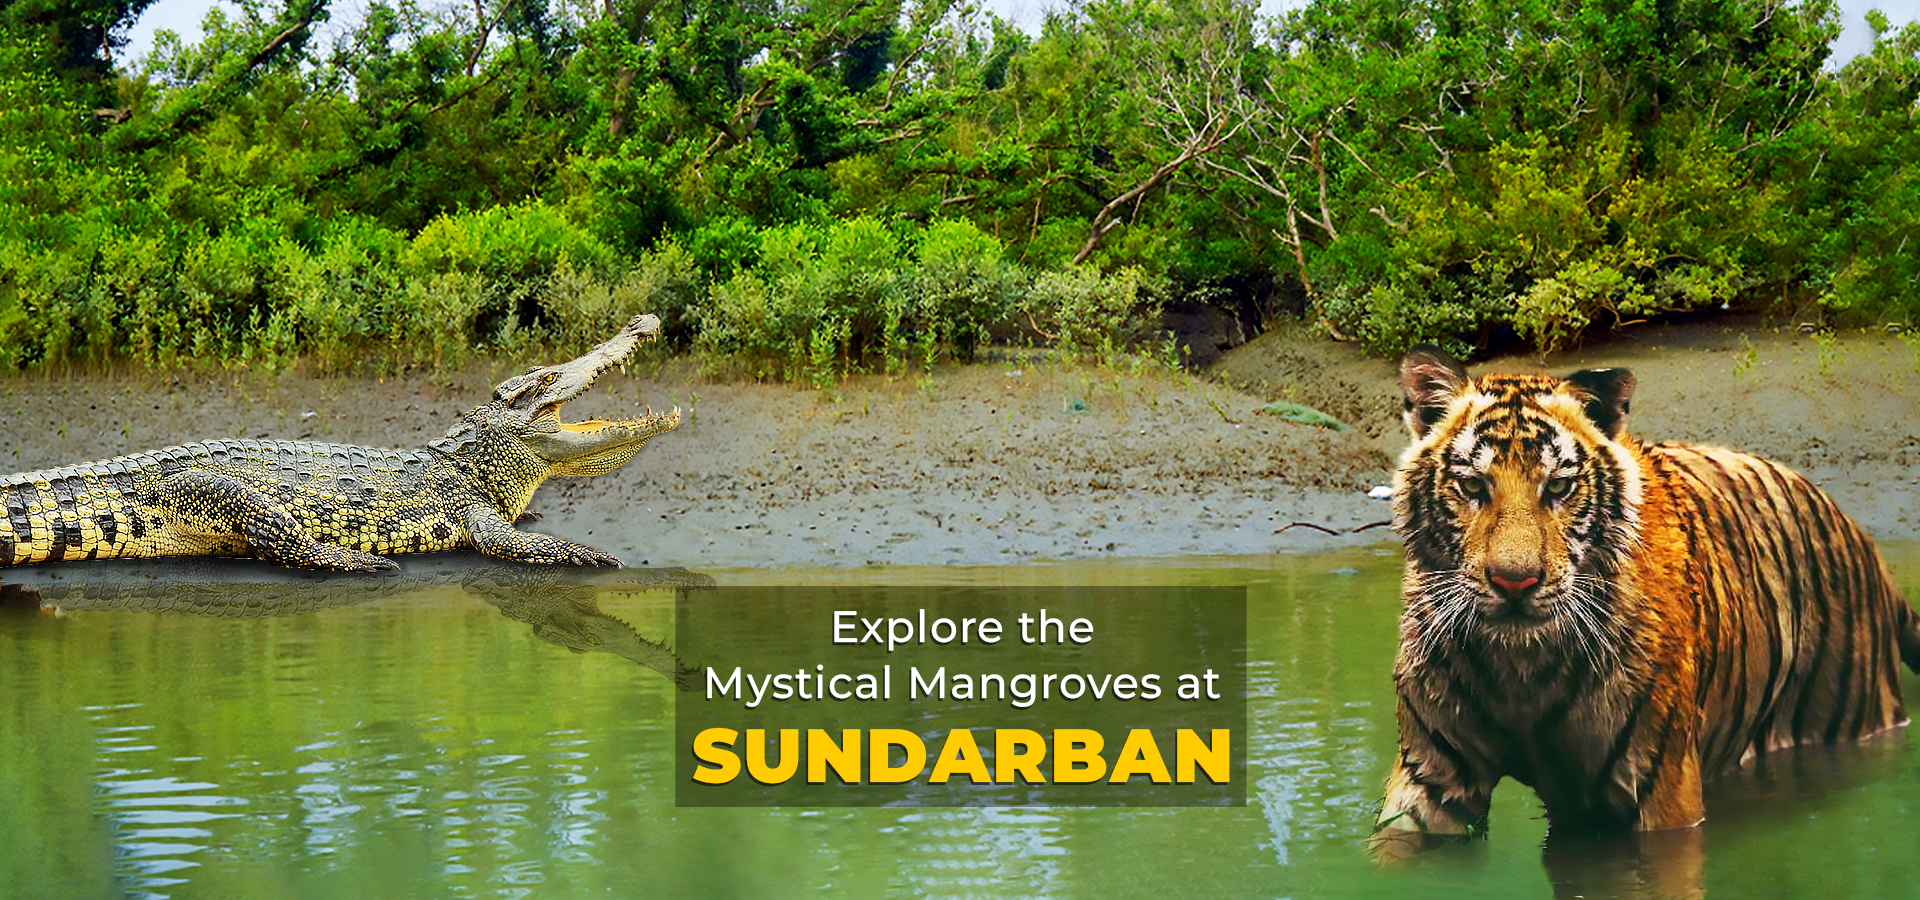 2. Sundarban